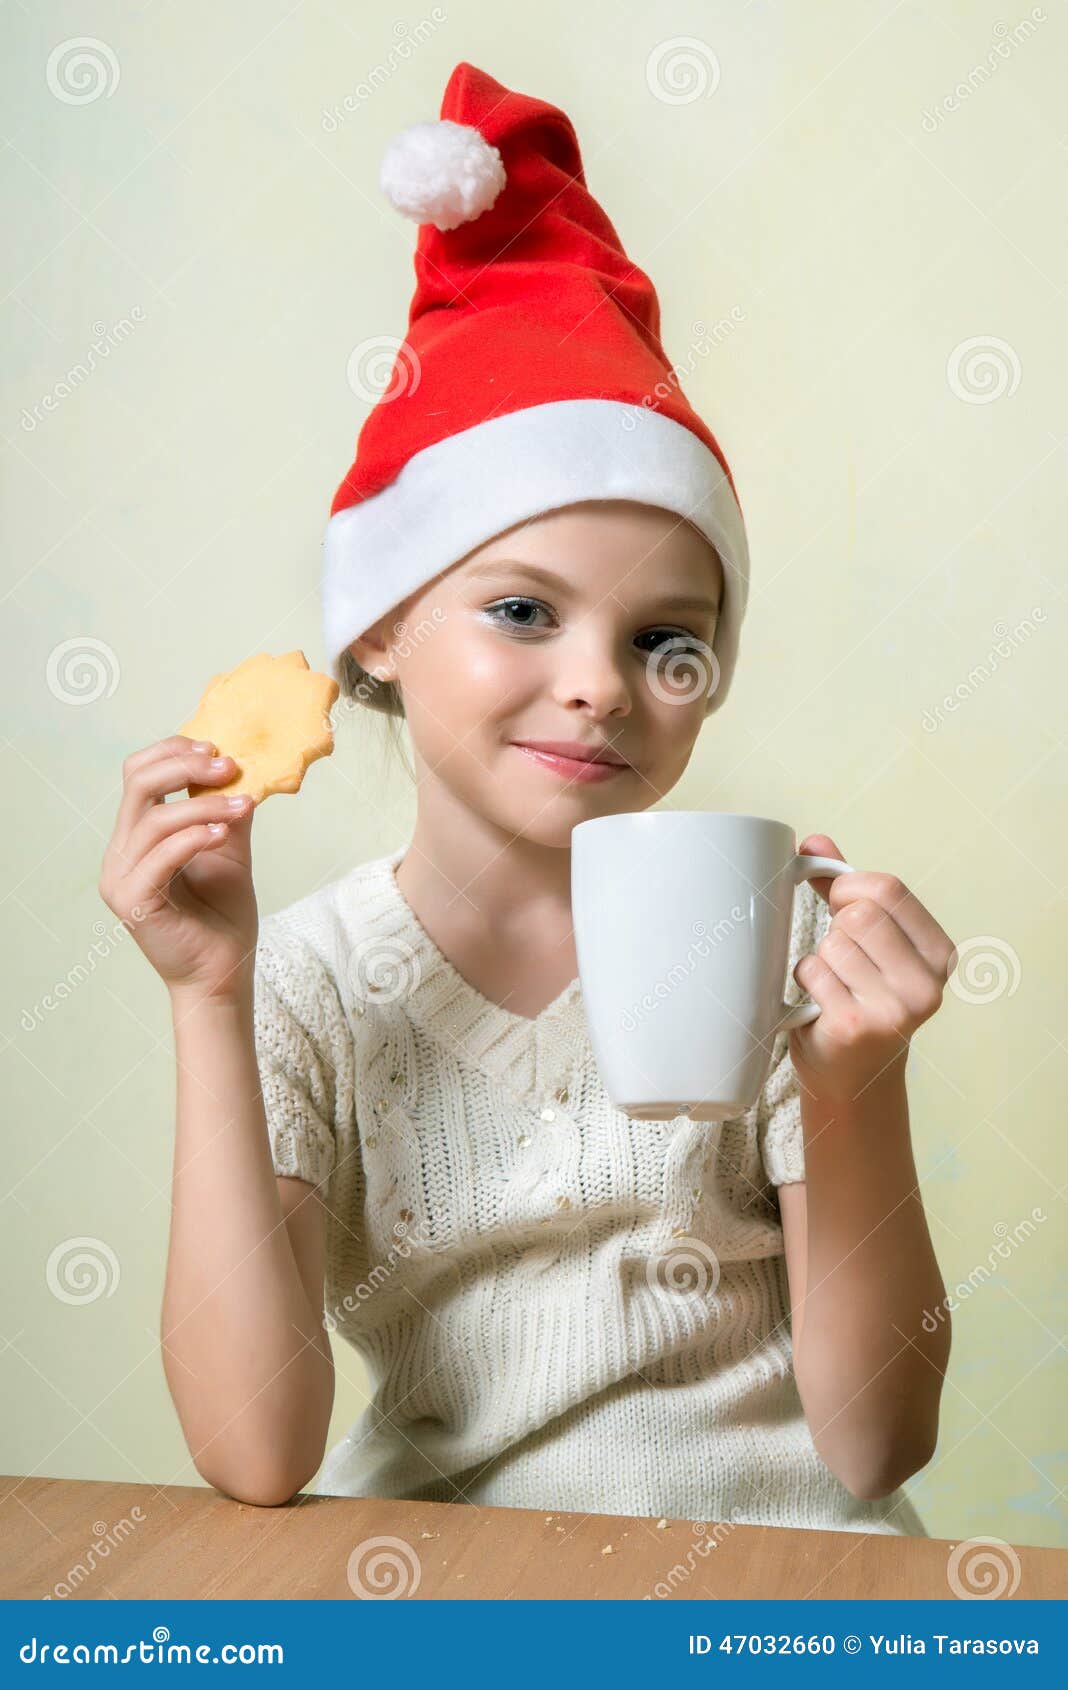 ÃÂ¡ute girl in santa claus hat eat cookies.